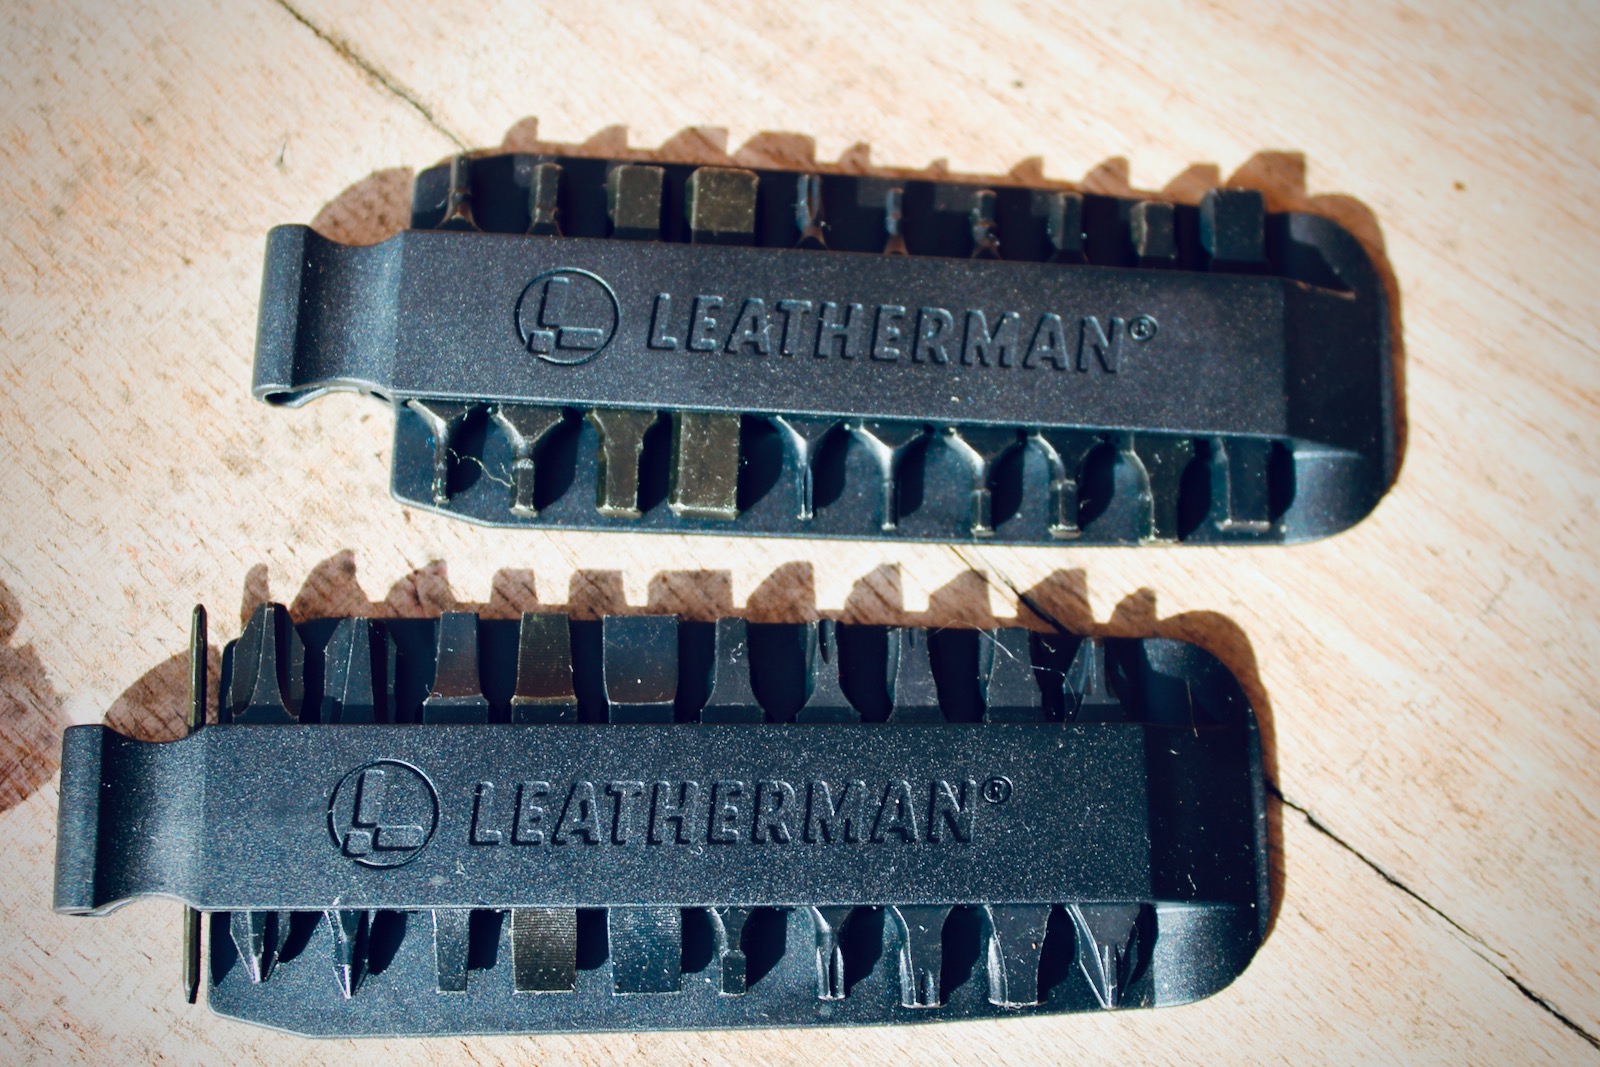 Leatherman Skeletool Multi-Tool Pliers and Bit Kit